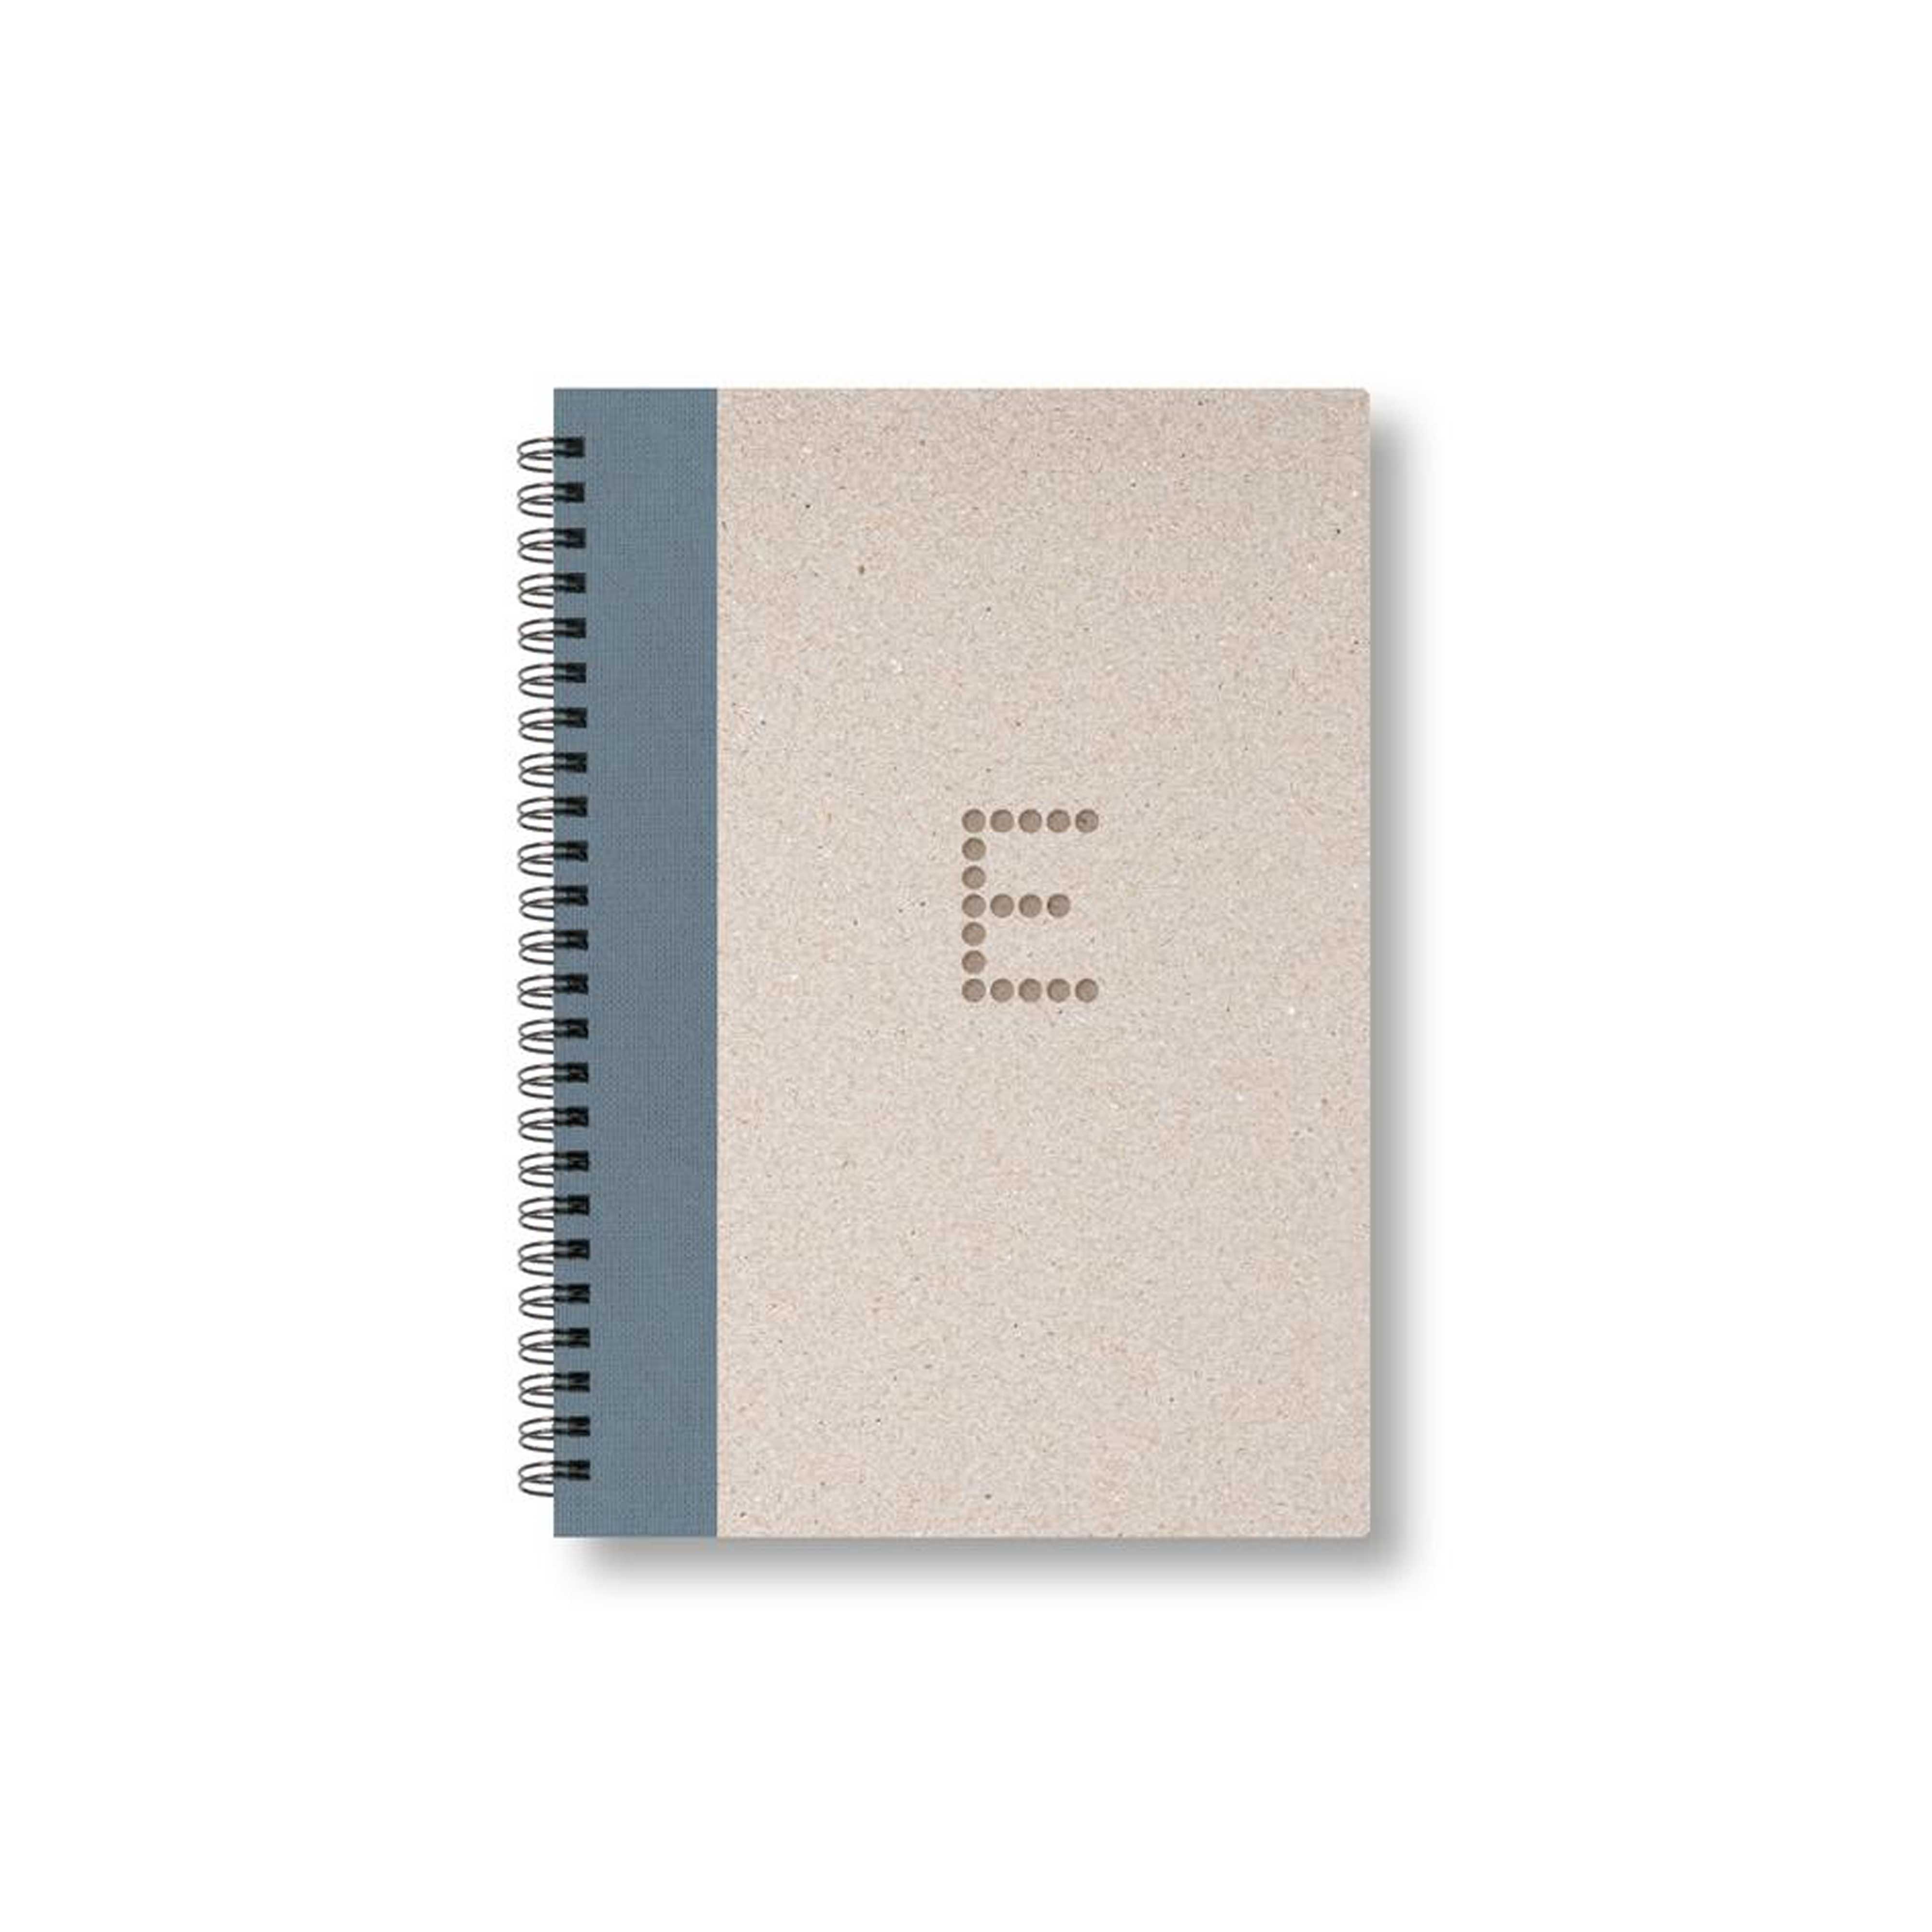 BOBO Zápisník, B6, čtverečkovaný, šedý, konfiguruj si obálku